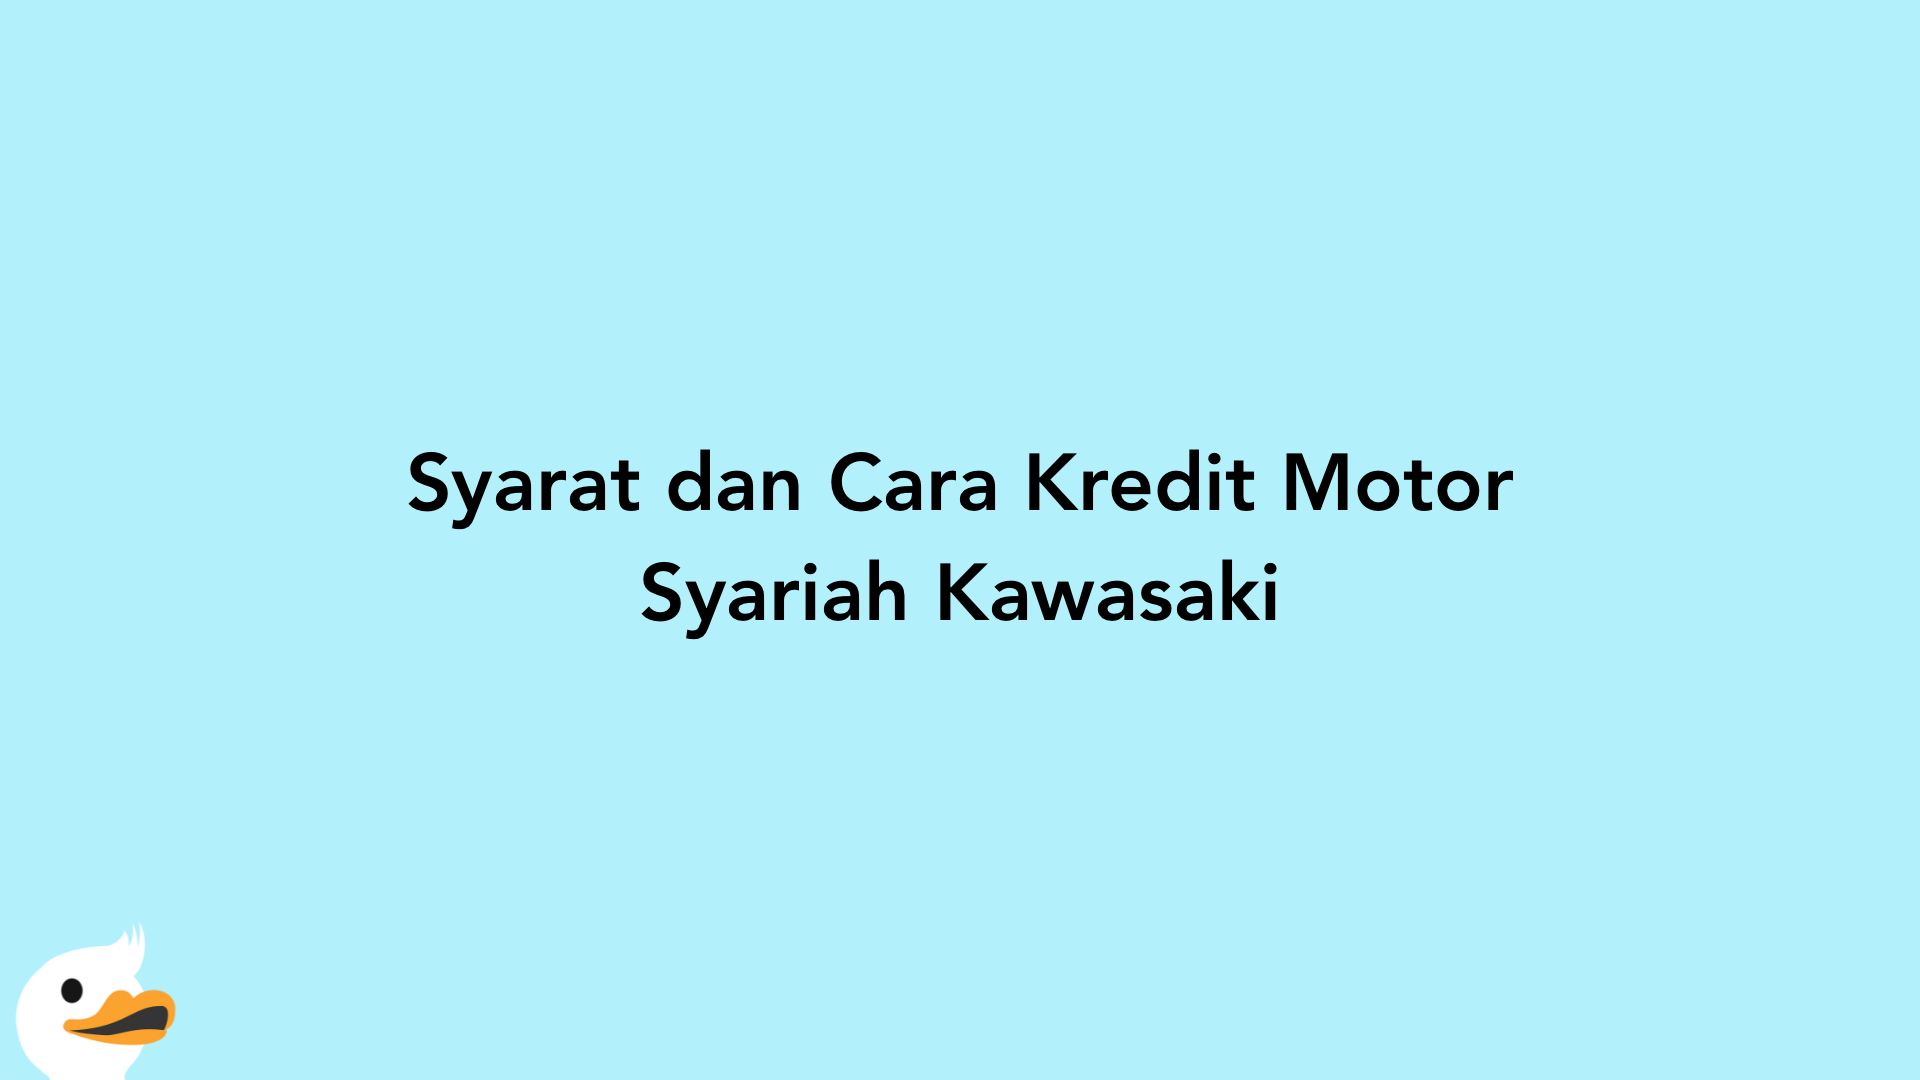 Syarat dan Cara Kredit Motor Syariah Kawasaki